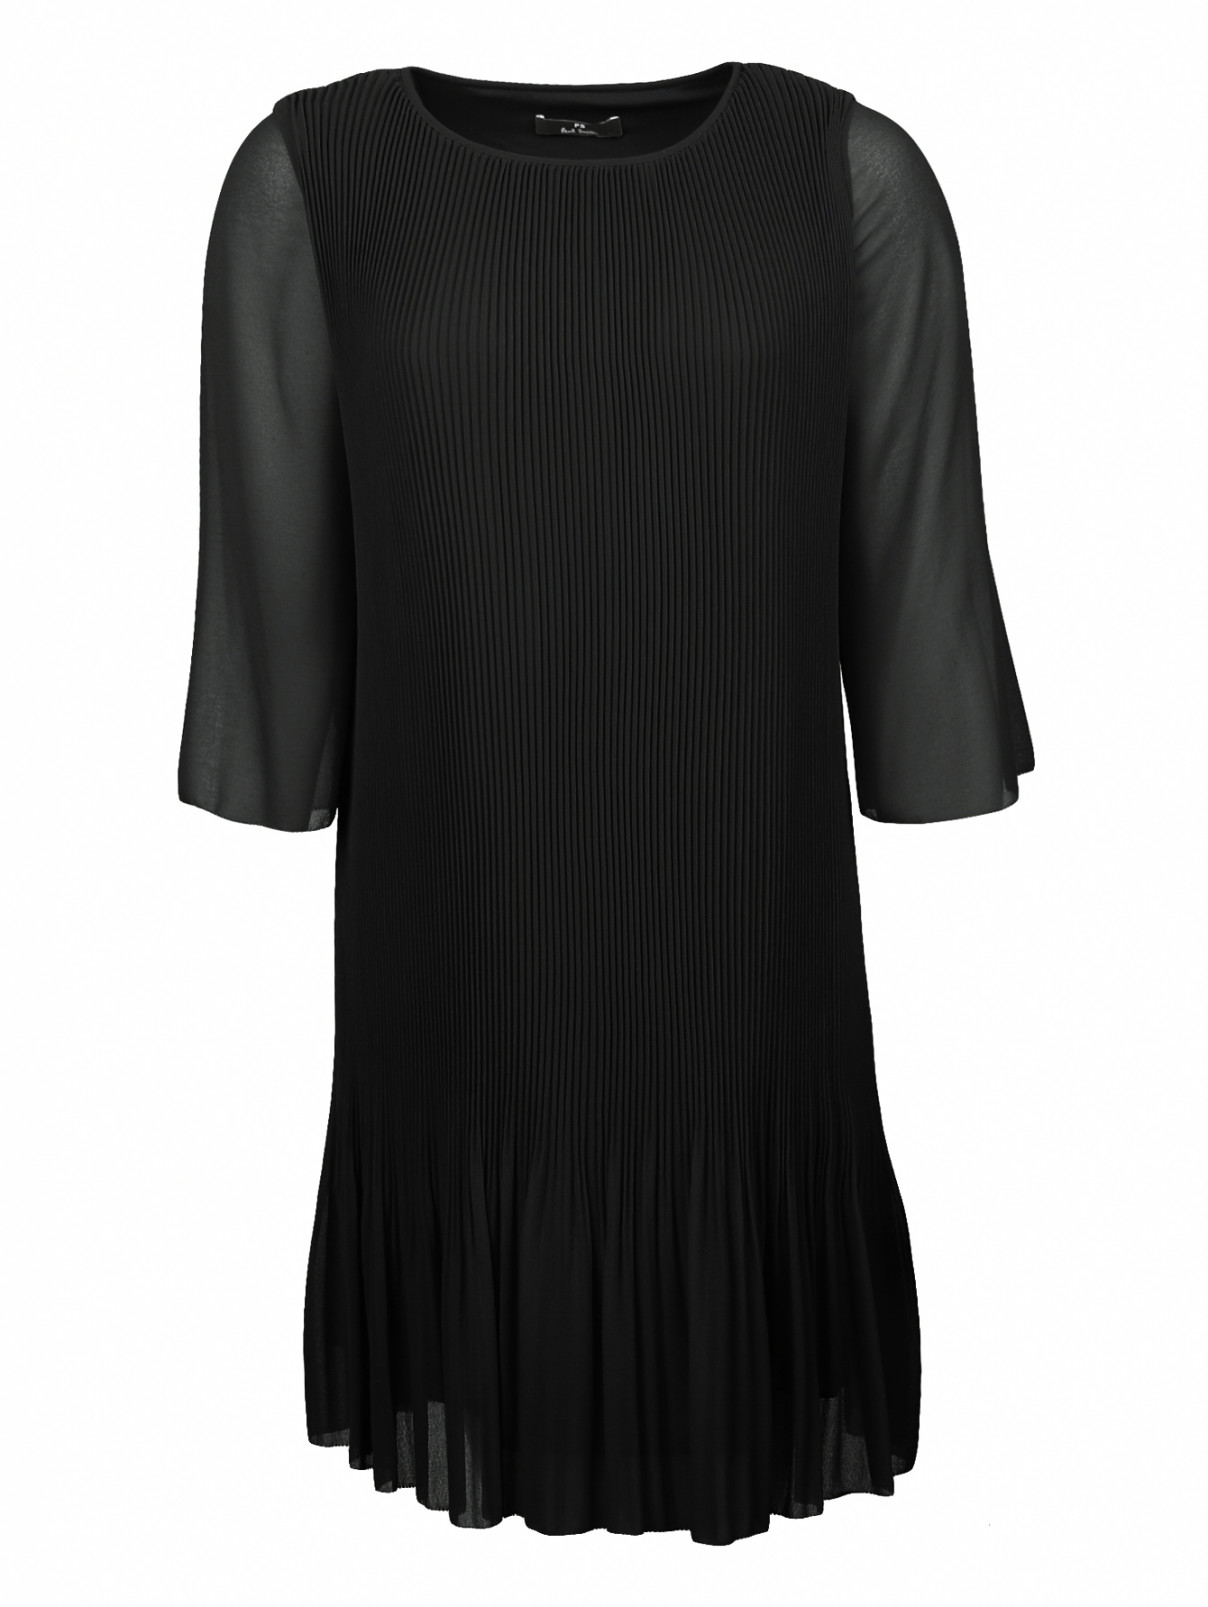 Платье-мини свободного кроя с рукавами 3/4 Paul Smith  –  Общий вид  – Цвет:  Черный